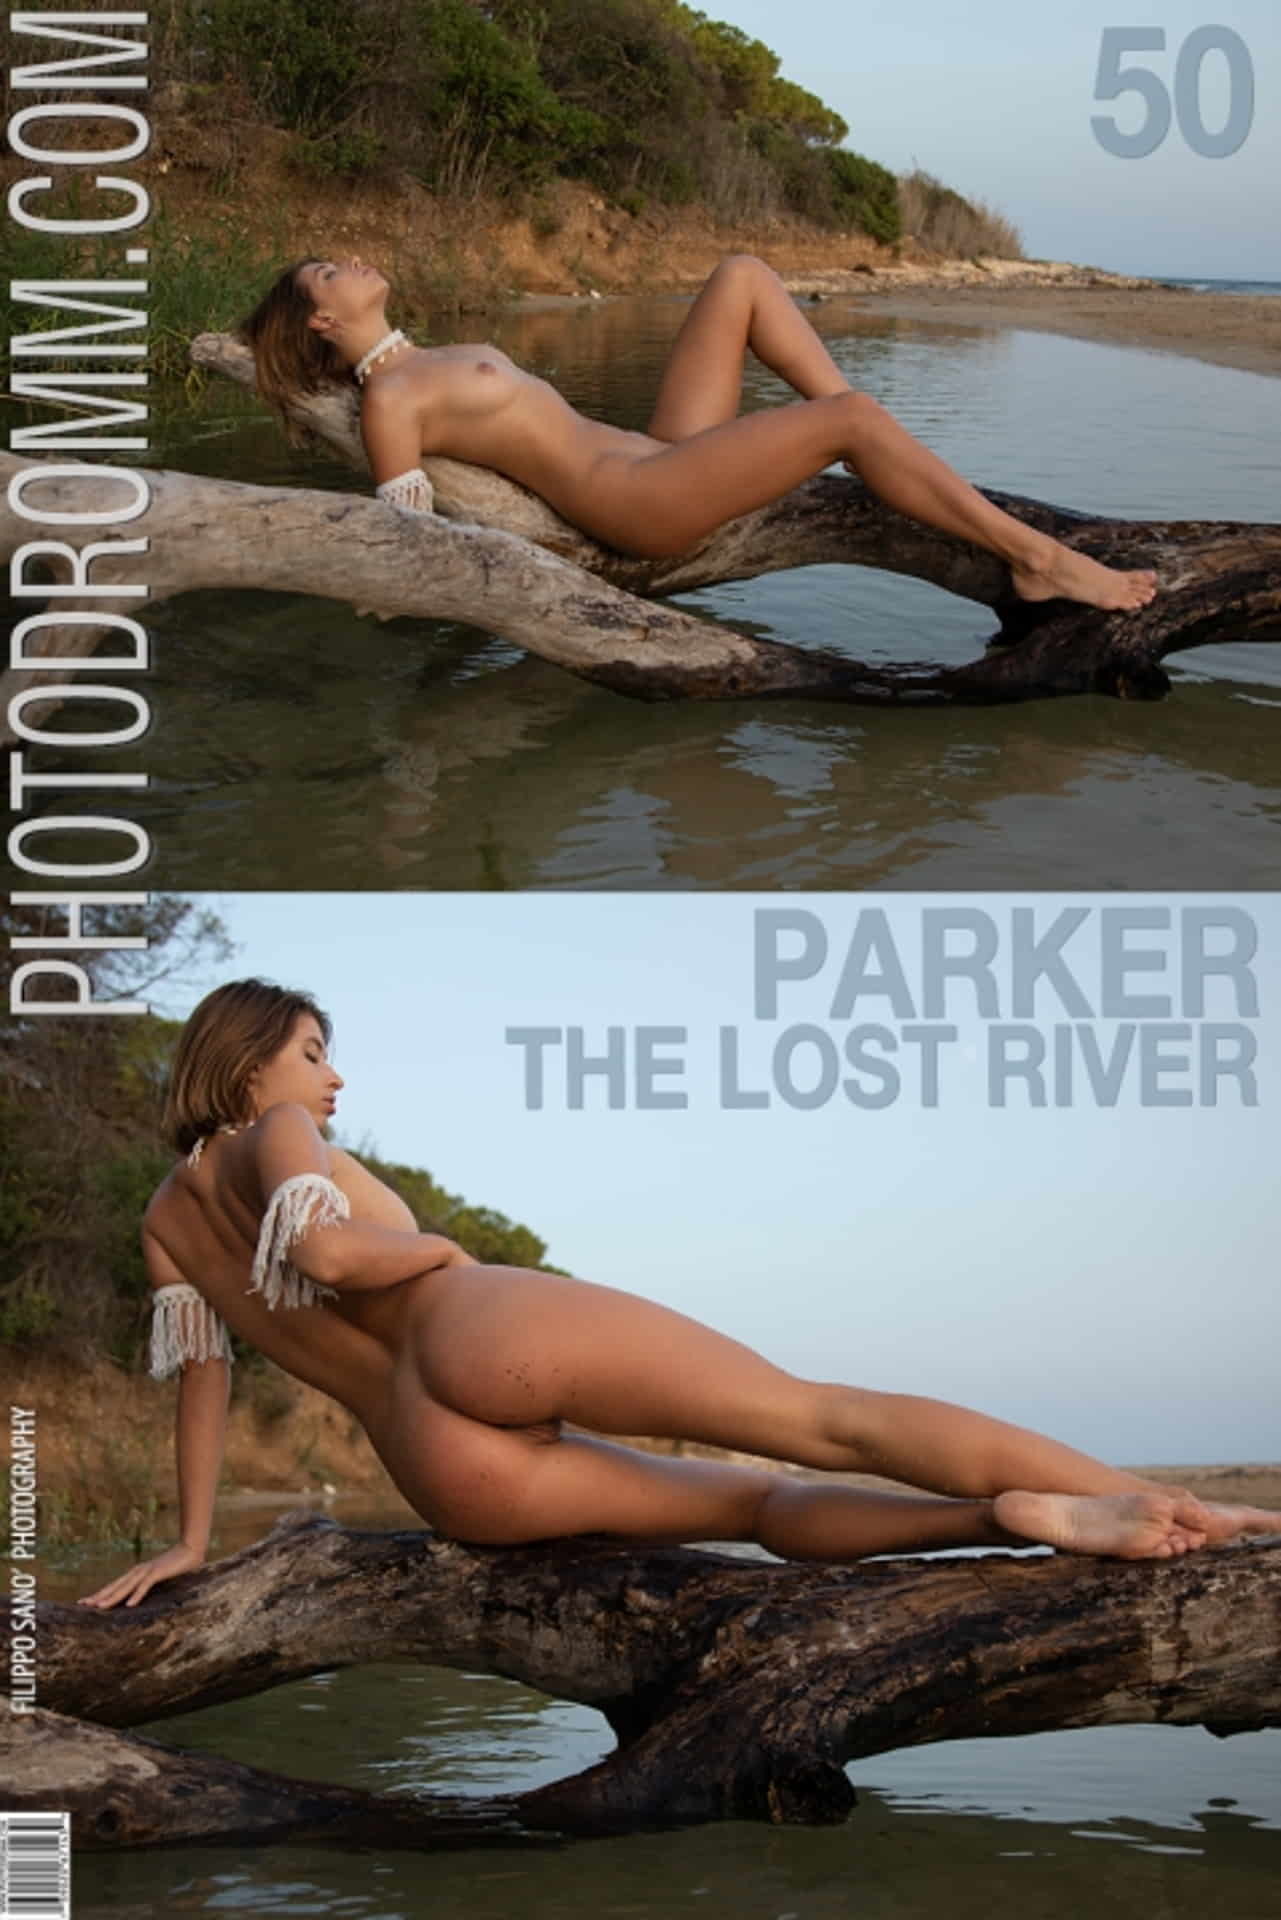 잃어버린 강 혹은 잃어버린 소녀——parker_잃어버린 강